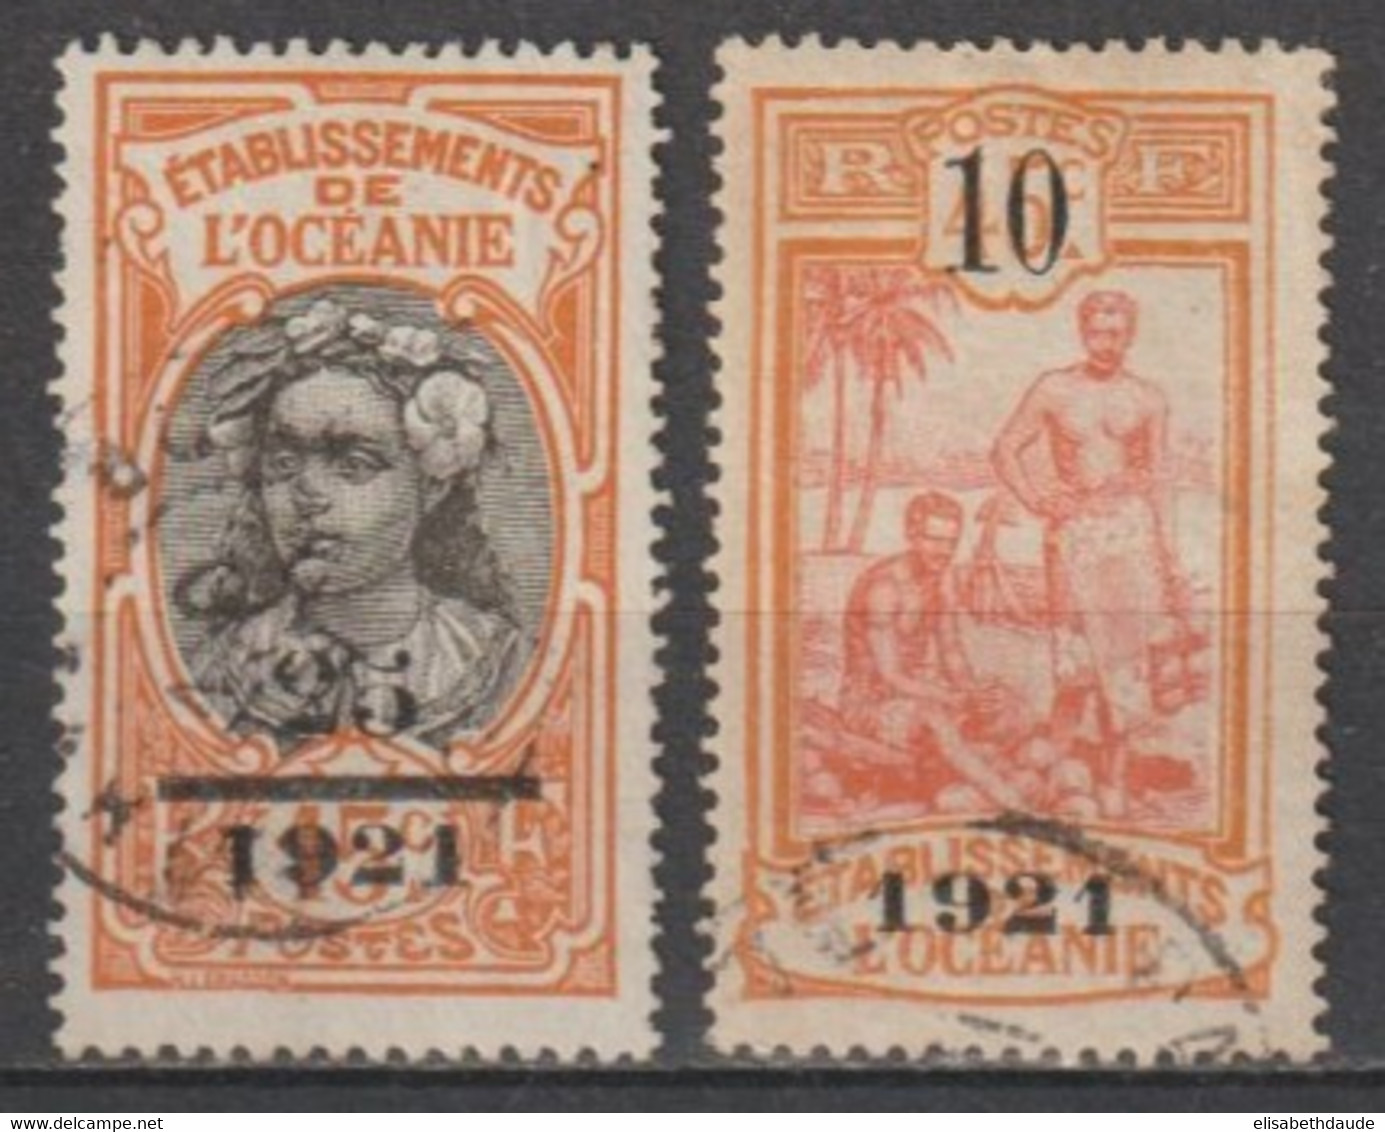 OCEANIE - 1921 - YVERT N°45/46 OBLITERES - COTE = 90 EUR - Usati